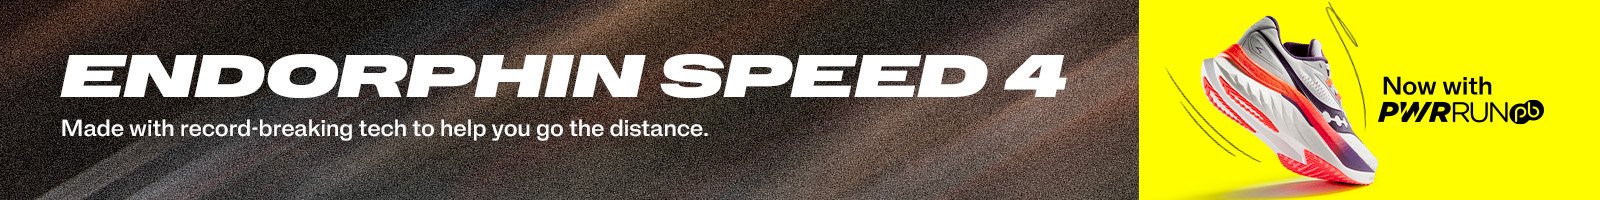 Saucony-Speed-4-PLP-Banner-Desktop-2-.jpg